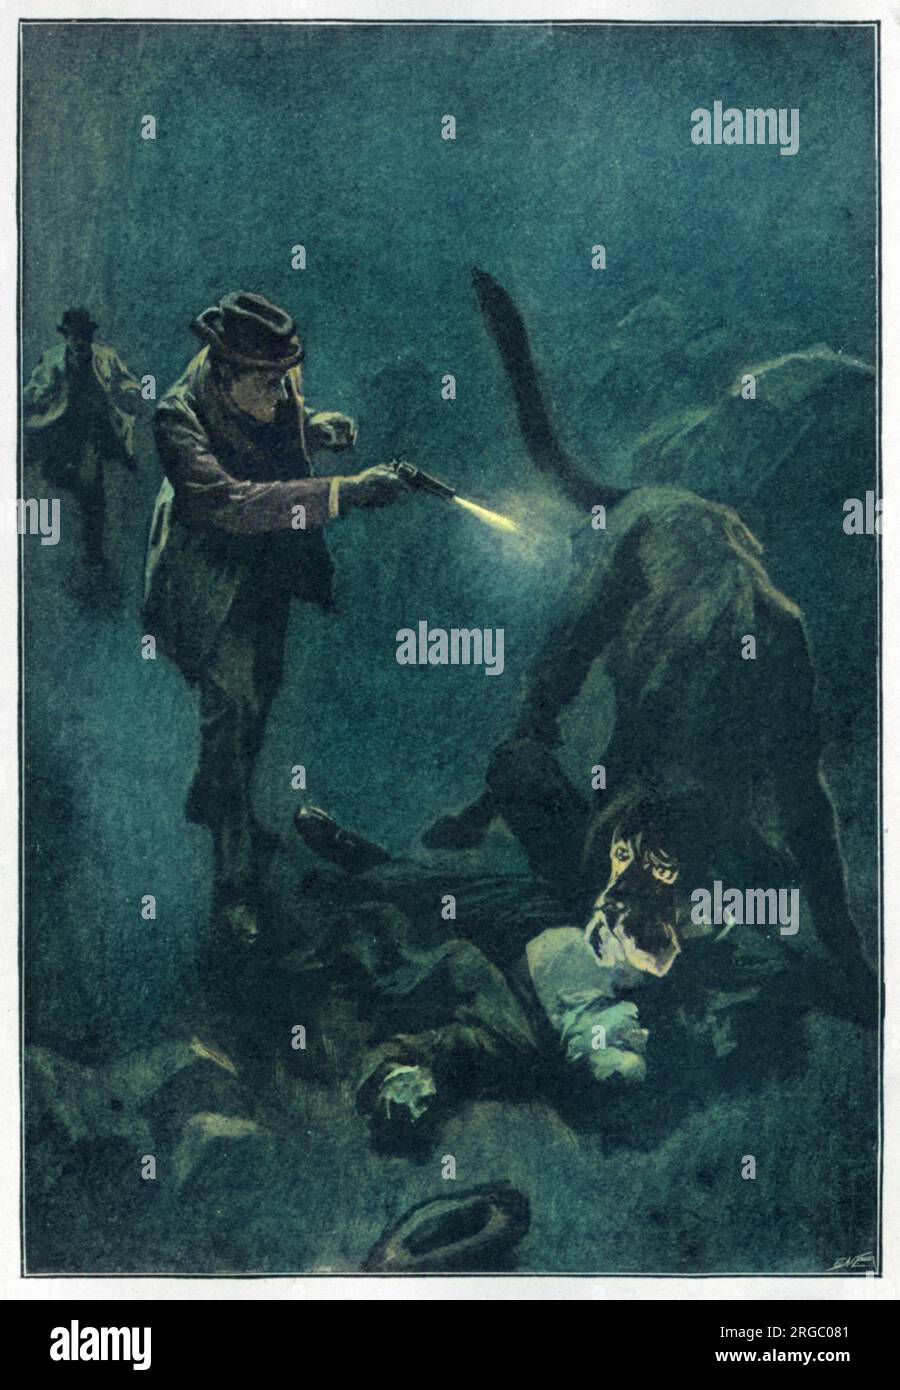 DER HUND DER BASKERVILLES Holmes schießt auf den finsteren Hund: "Holmes hat fünf Fässer seines Revolvers in die Flanke der Kreatur geleert." Stockfoto